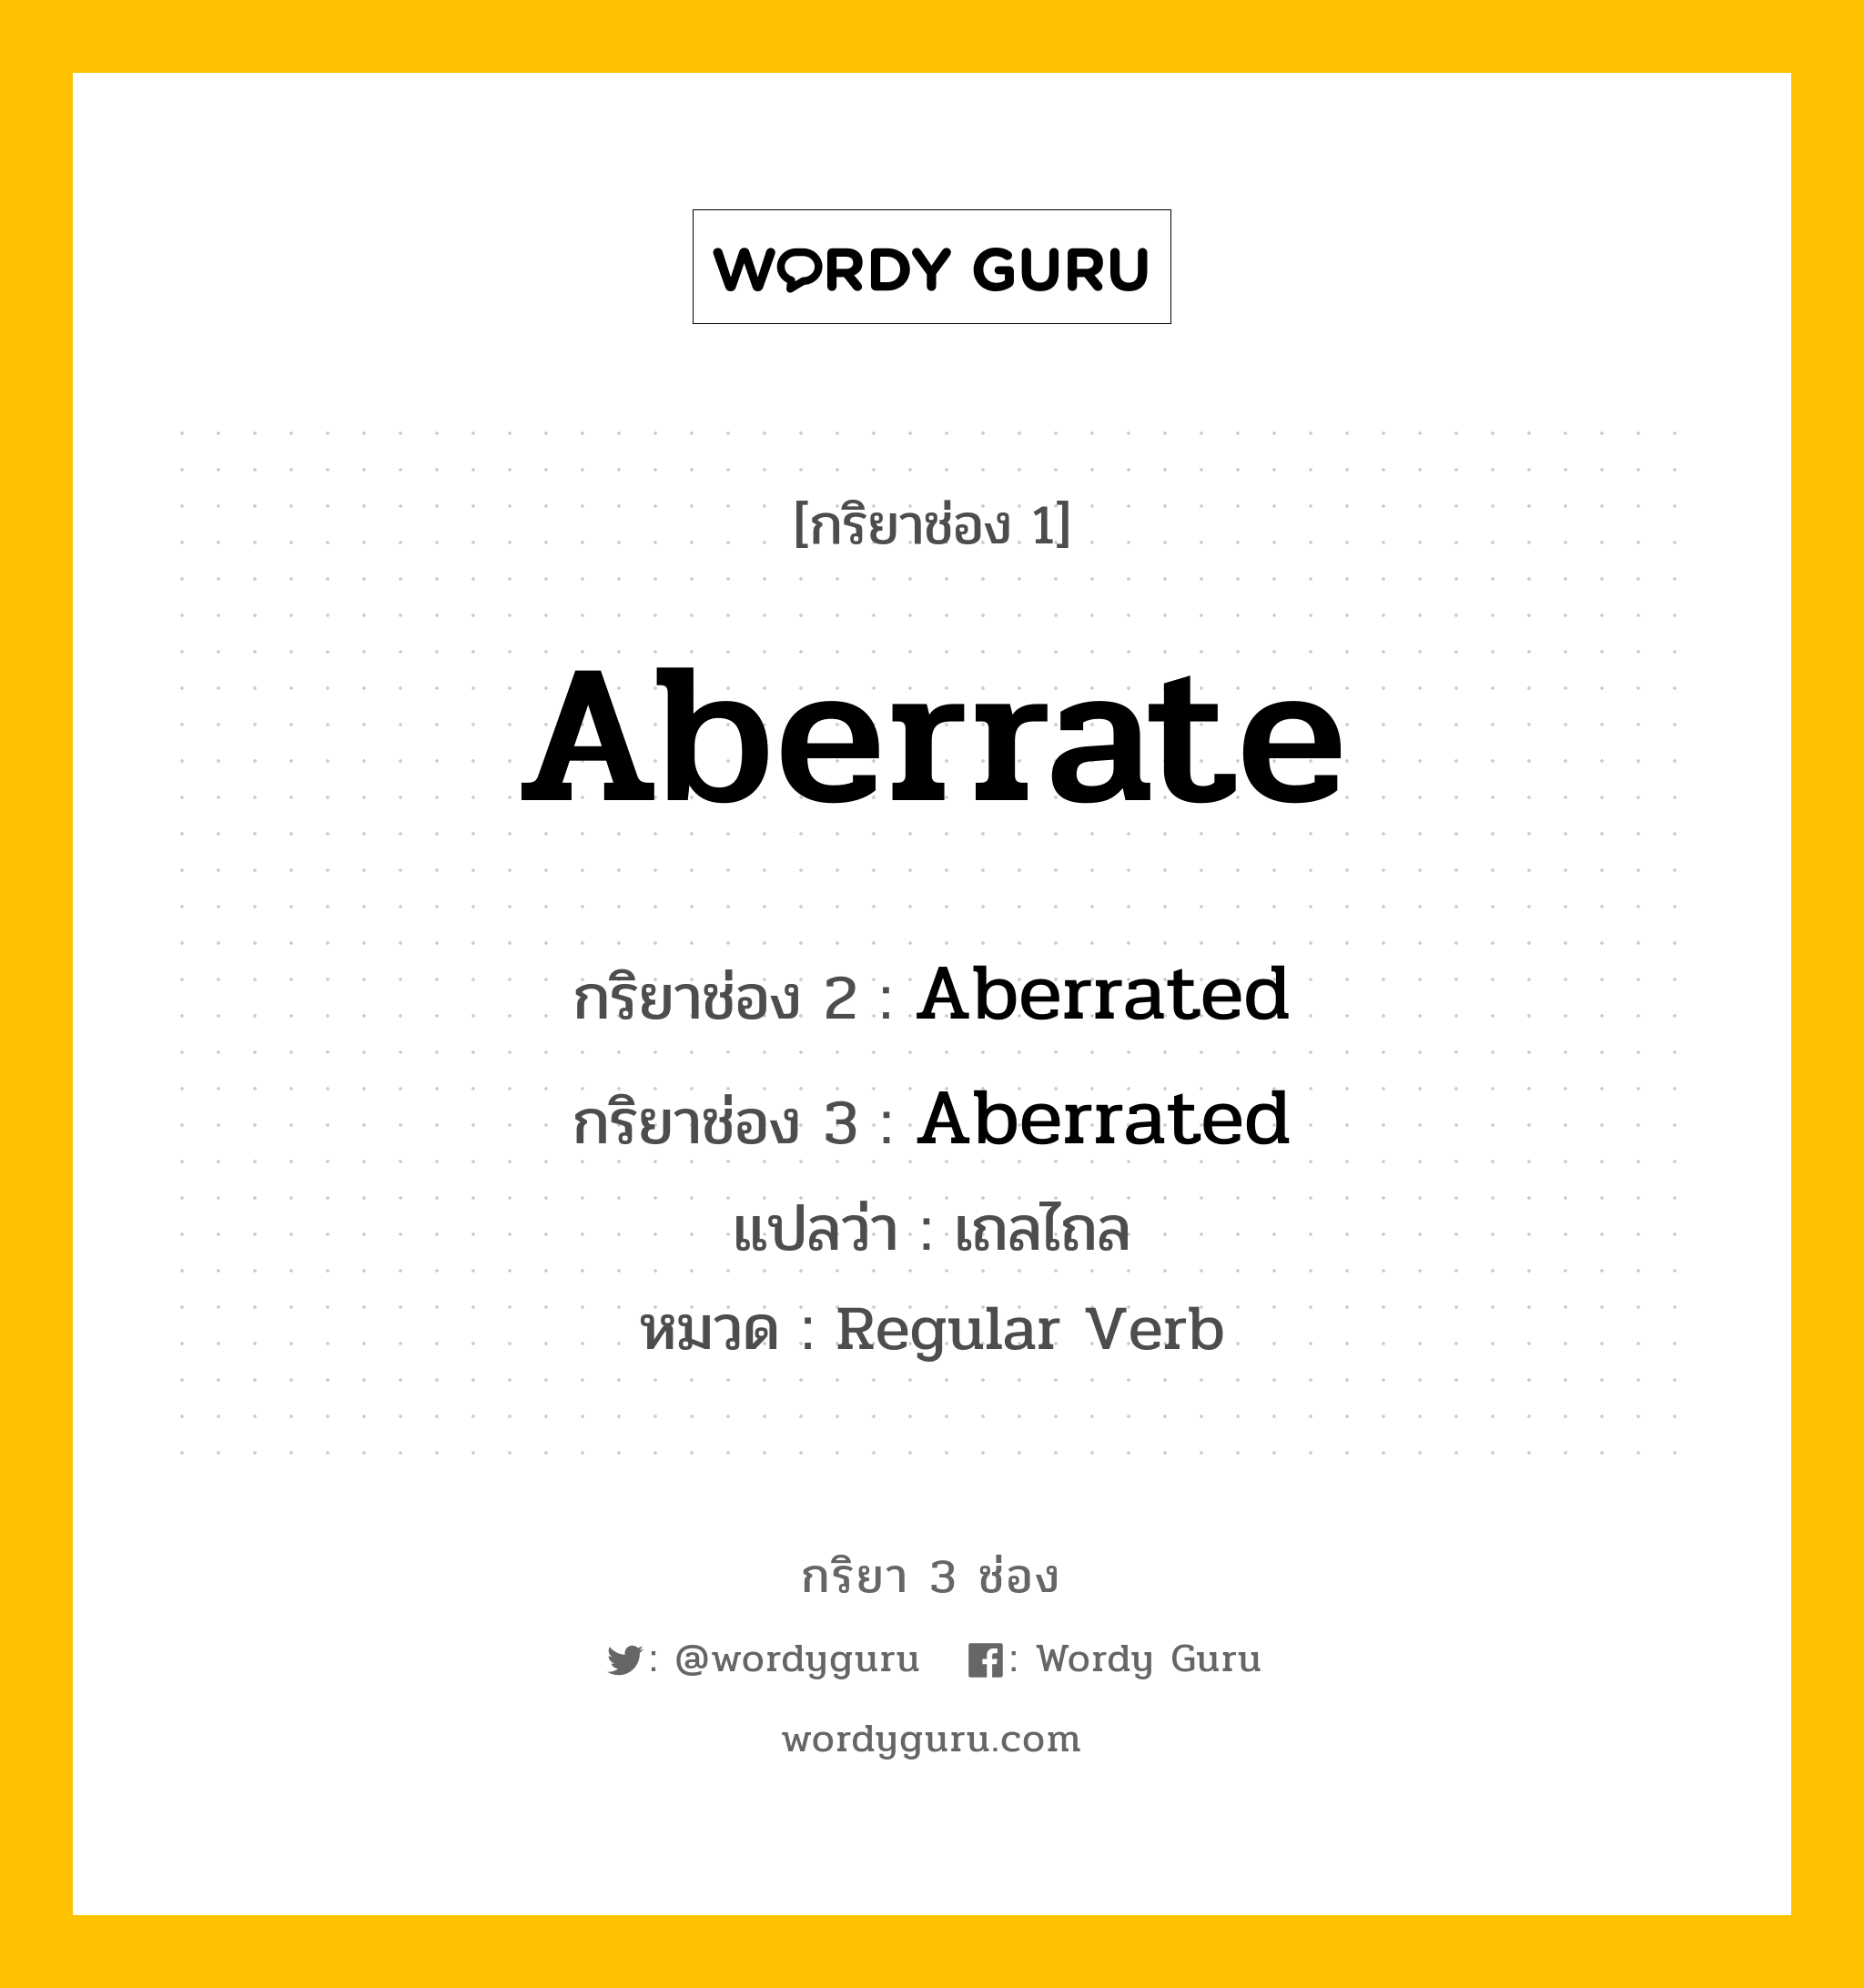 กริยา 3 ช่อง: Aberrate ช่อง 2 Aberrate ช่อง 3 คืออะไร, กริยาช่อง 1 Aberrate กริยาช่อง 2 Aberrated กริยาช่อง 3 Aberrated แปลว่า เถลไถล หมวด Regular Verb หมวด Regular Verb